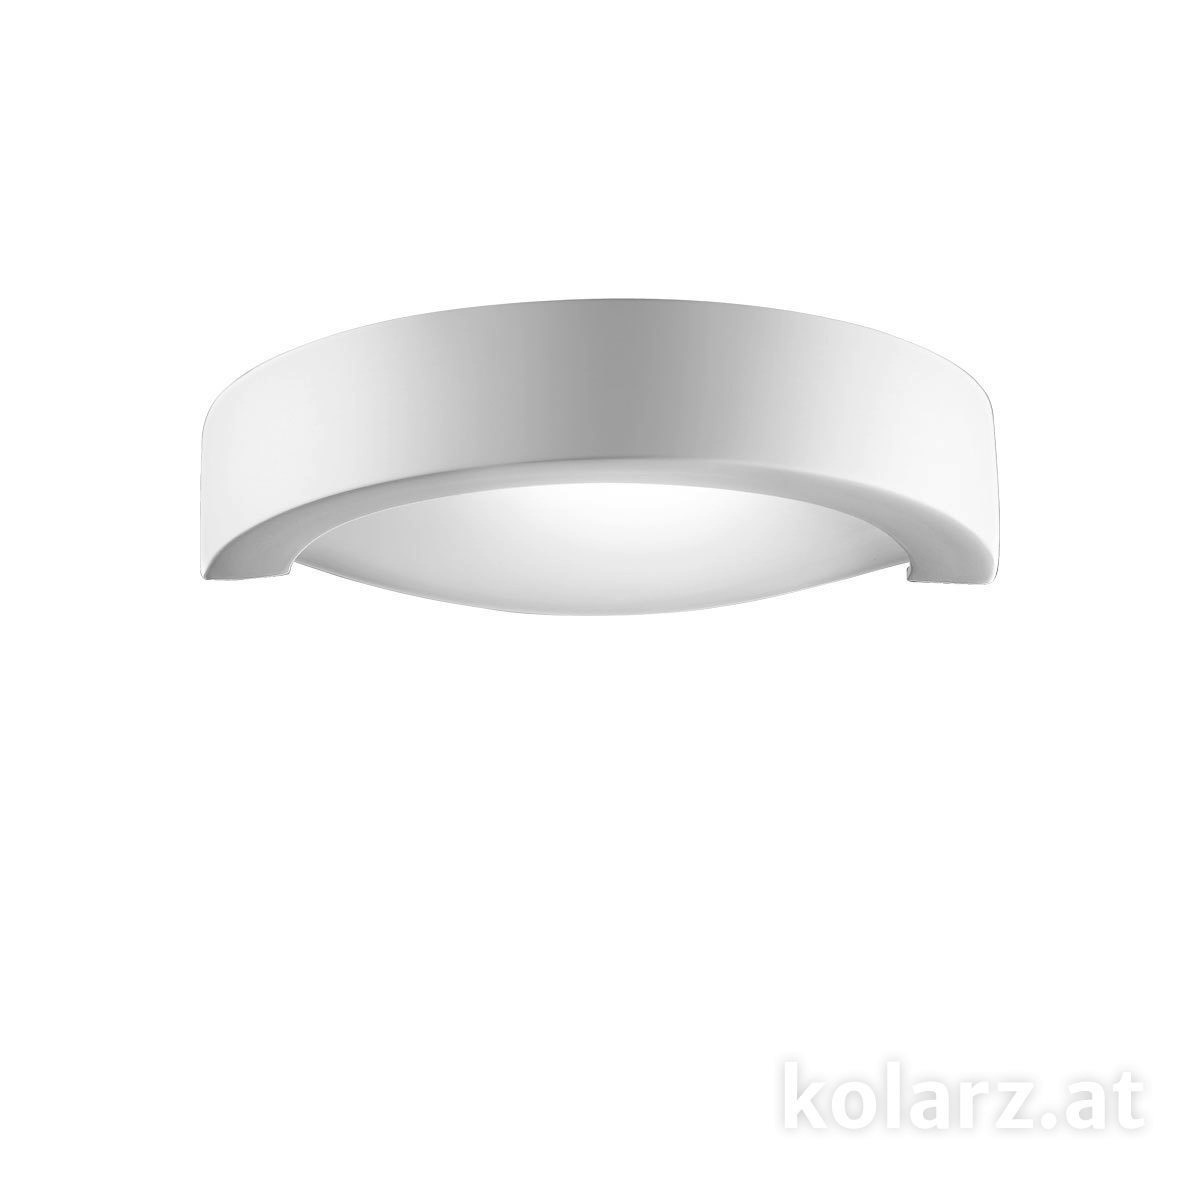 Moderne  fürs Bad von KOLARZ Leuchten Wandleuchte CASABLANCA 219.63.1